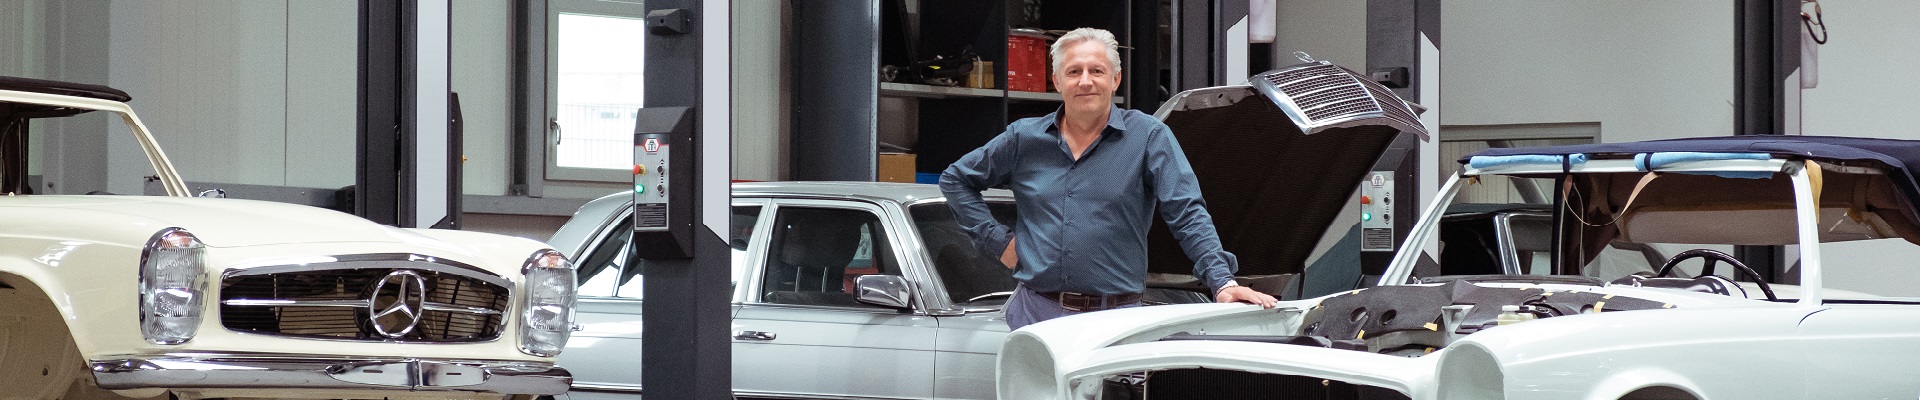 Andreas Meyer steht in der Werkstatt neben einem Auto